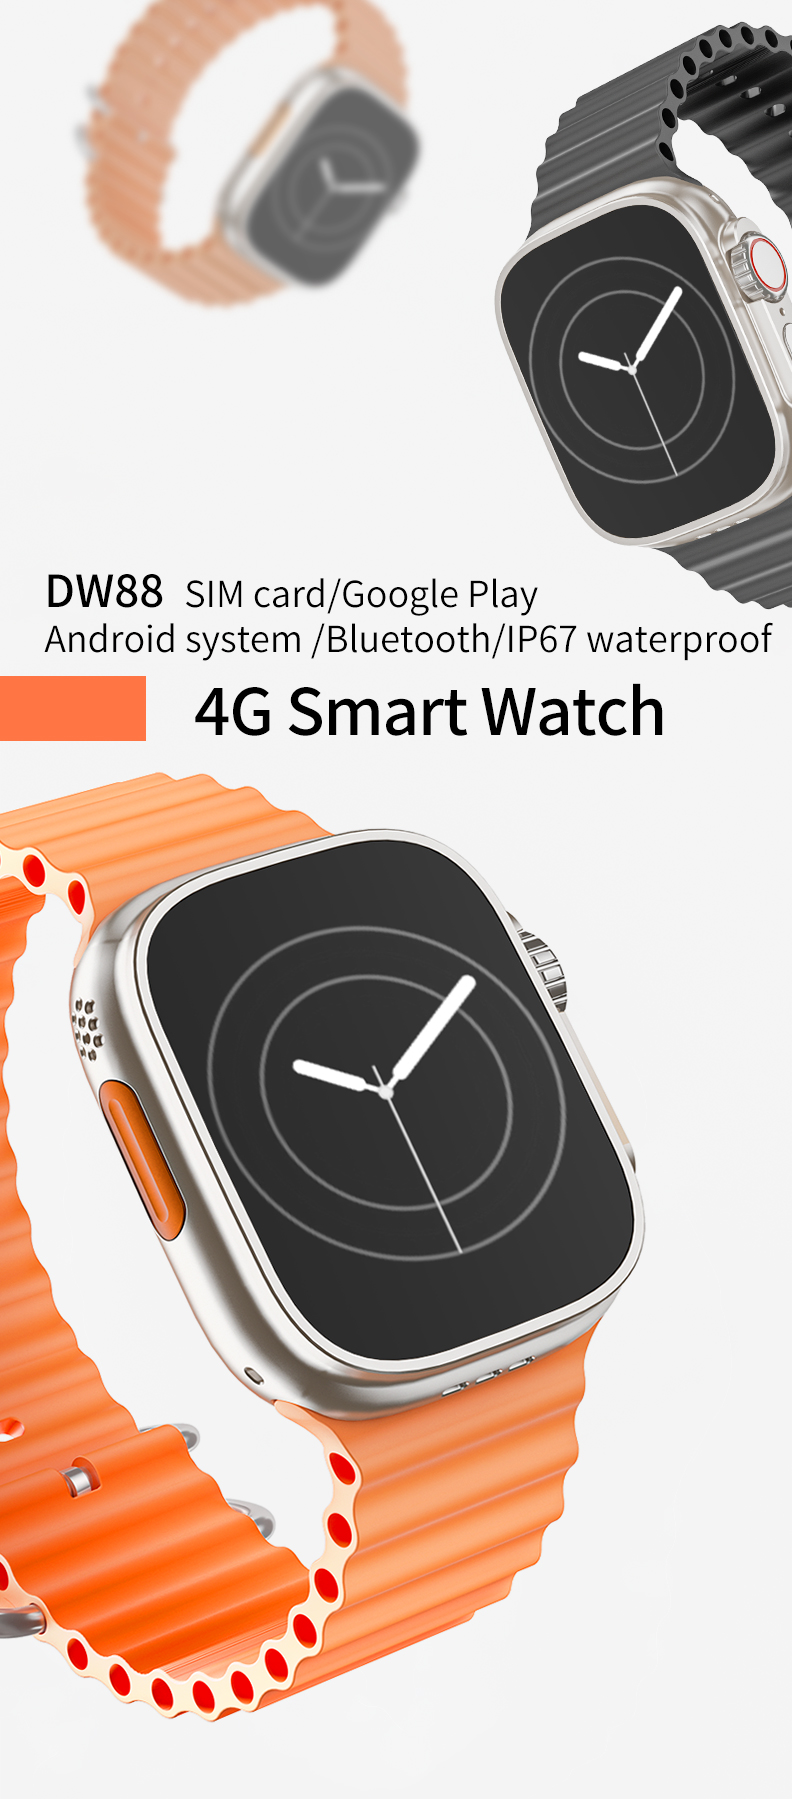 Горячие продажи 2024 года с Android-часами 4G; Какой из них мне выбрать HK ULTRA ONE, X8 4G и умные часы DW88-Shenzhen Shengye Technology Co.,Ltd